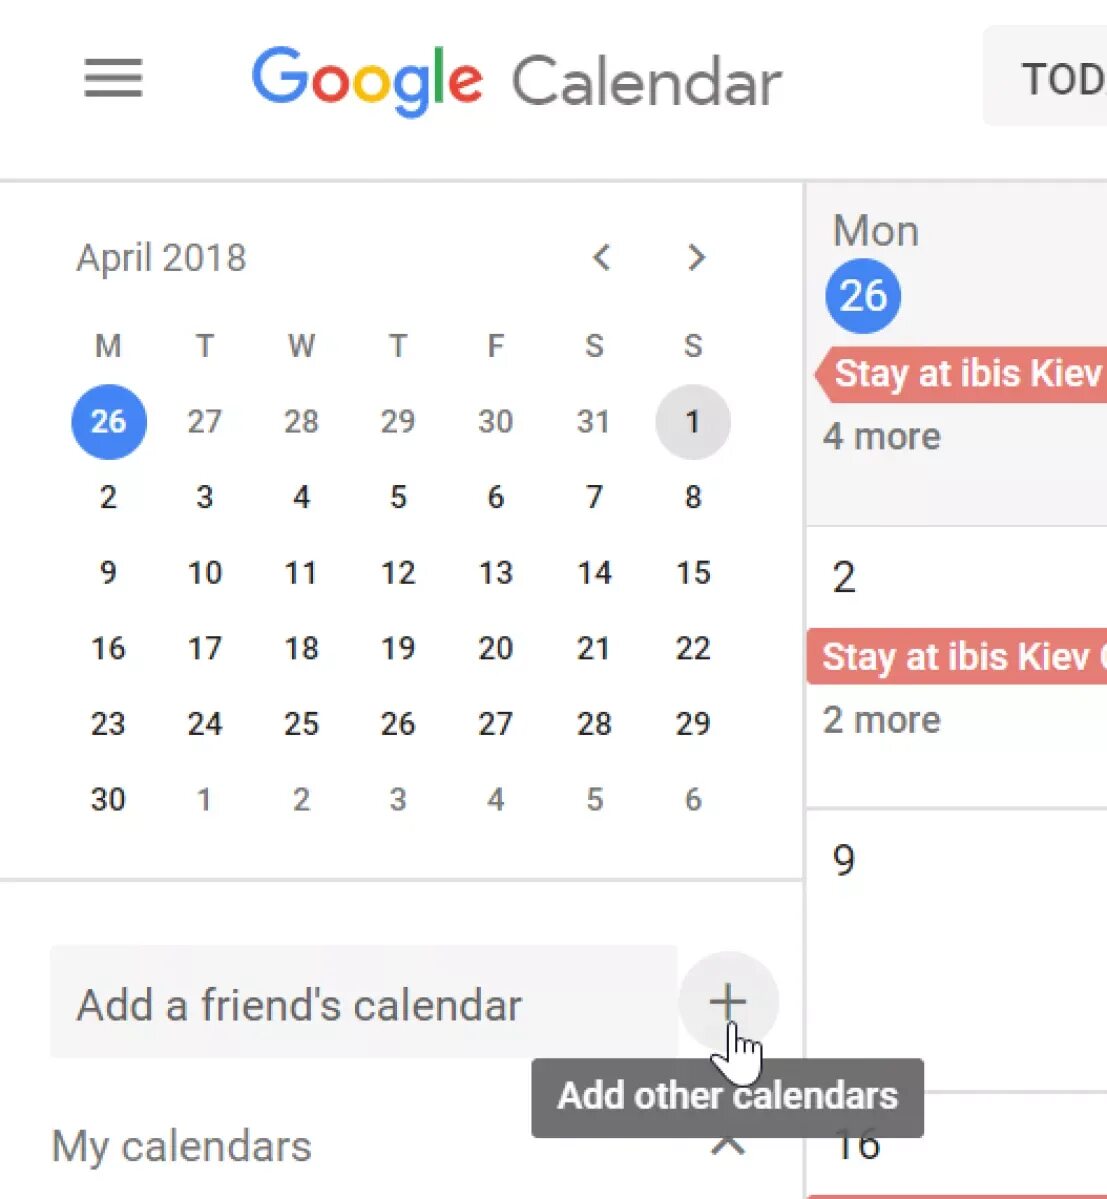 Гугл календарь. Календарь Google фото. Календарь гугл в мобильном. Красивый гугл календарь.